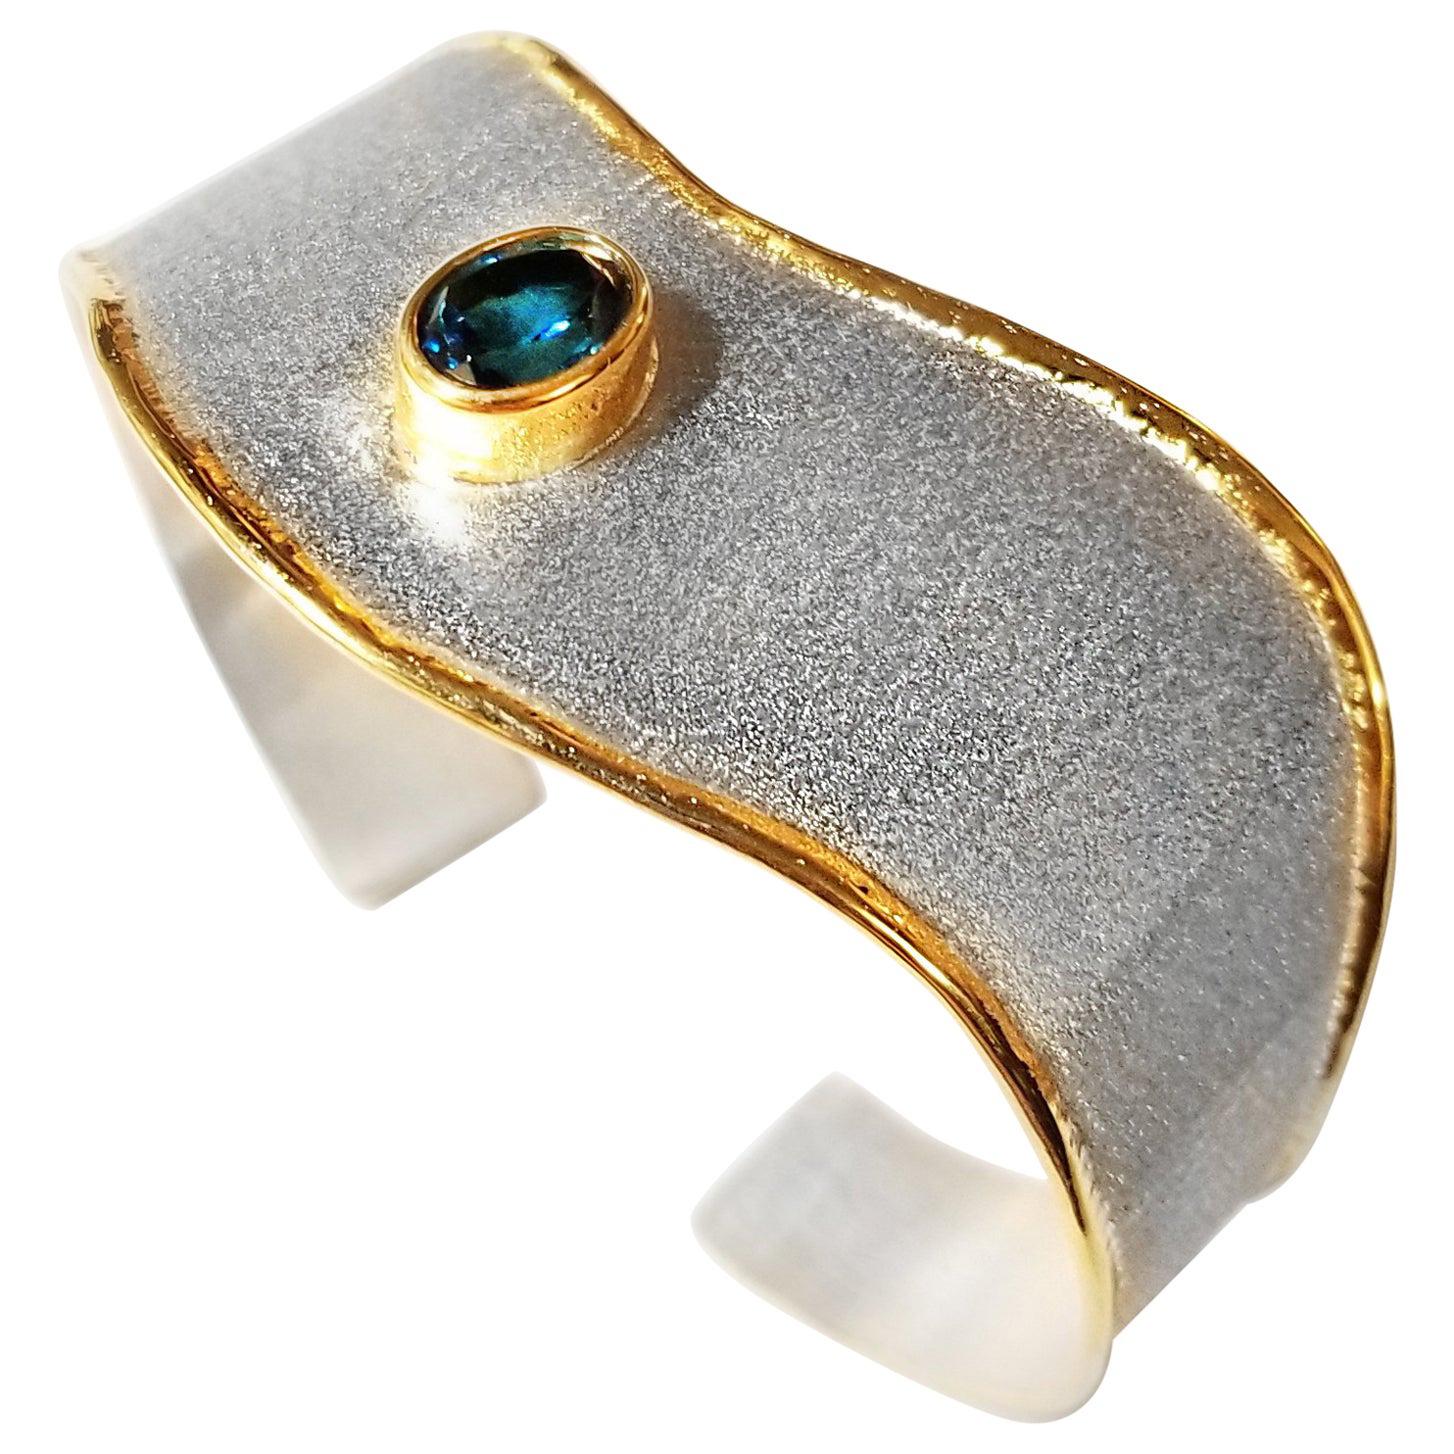 Yianni Creations, manchette bicolore en argent fin et or 24 carats avec topaze bleue